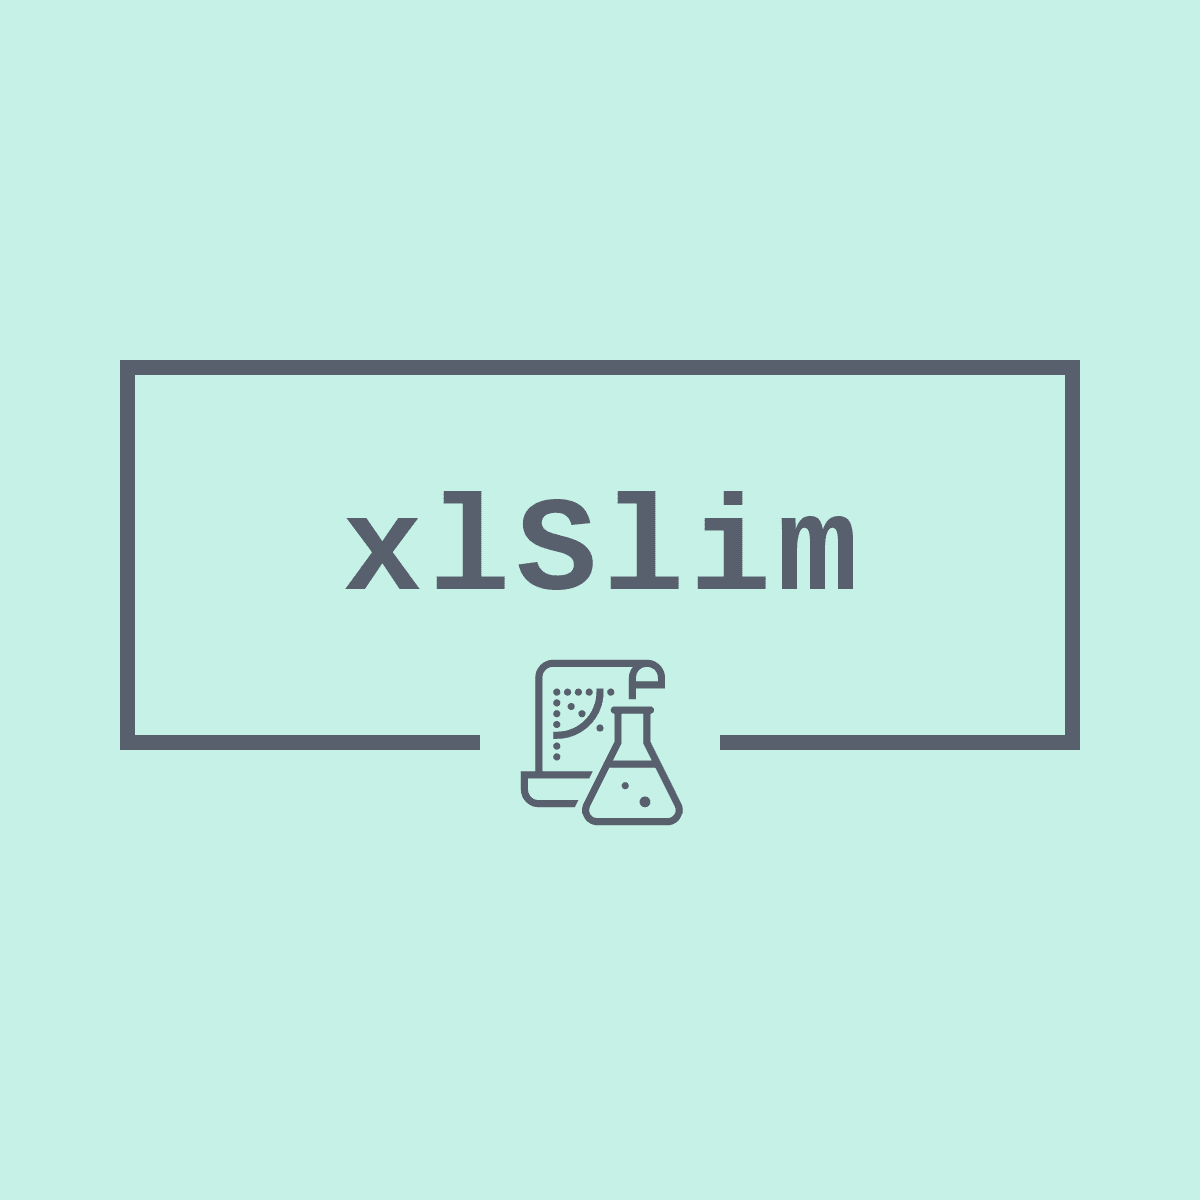 xlSlim Premium License - 12 months